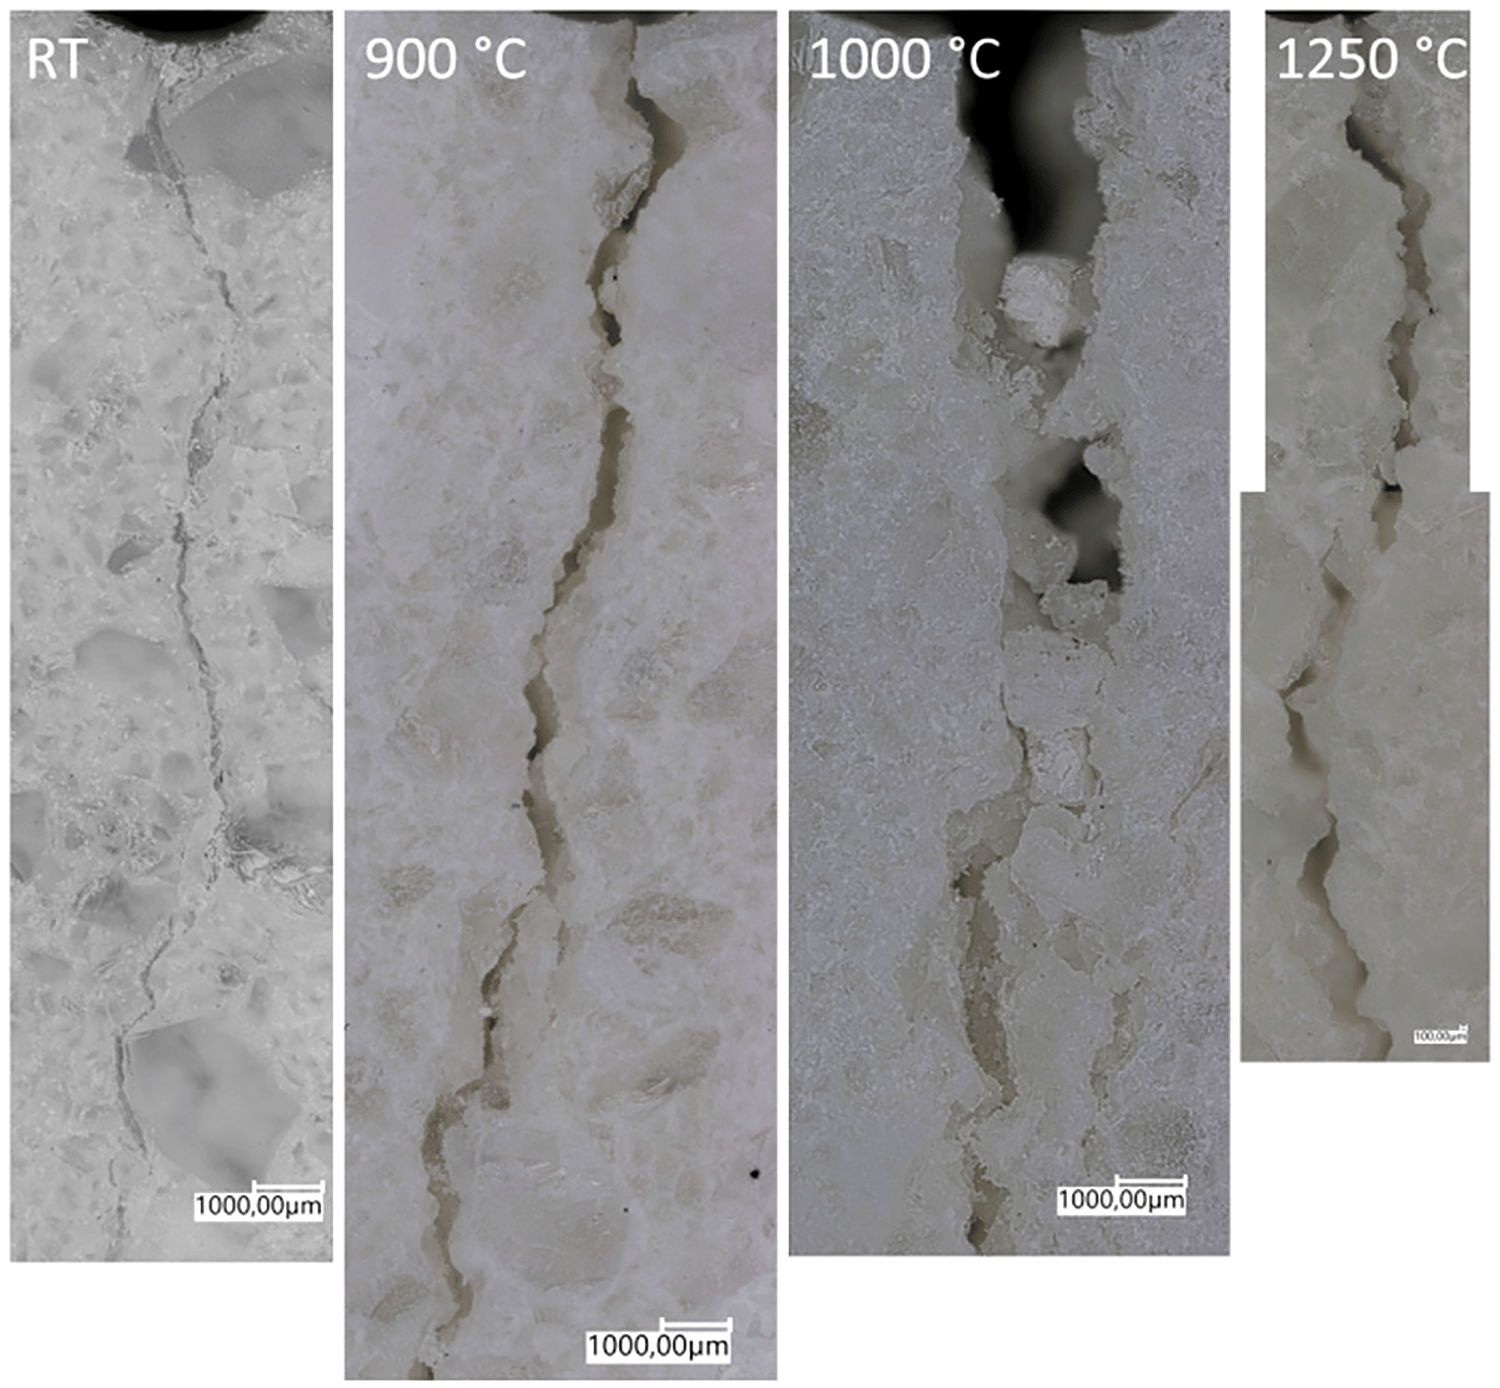 crack path at different temperatures for fused silica bricks